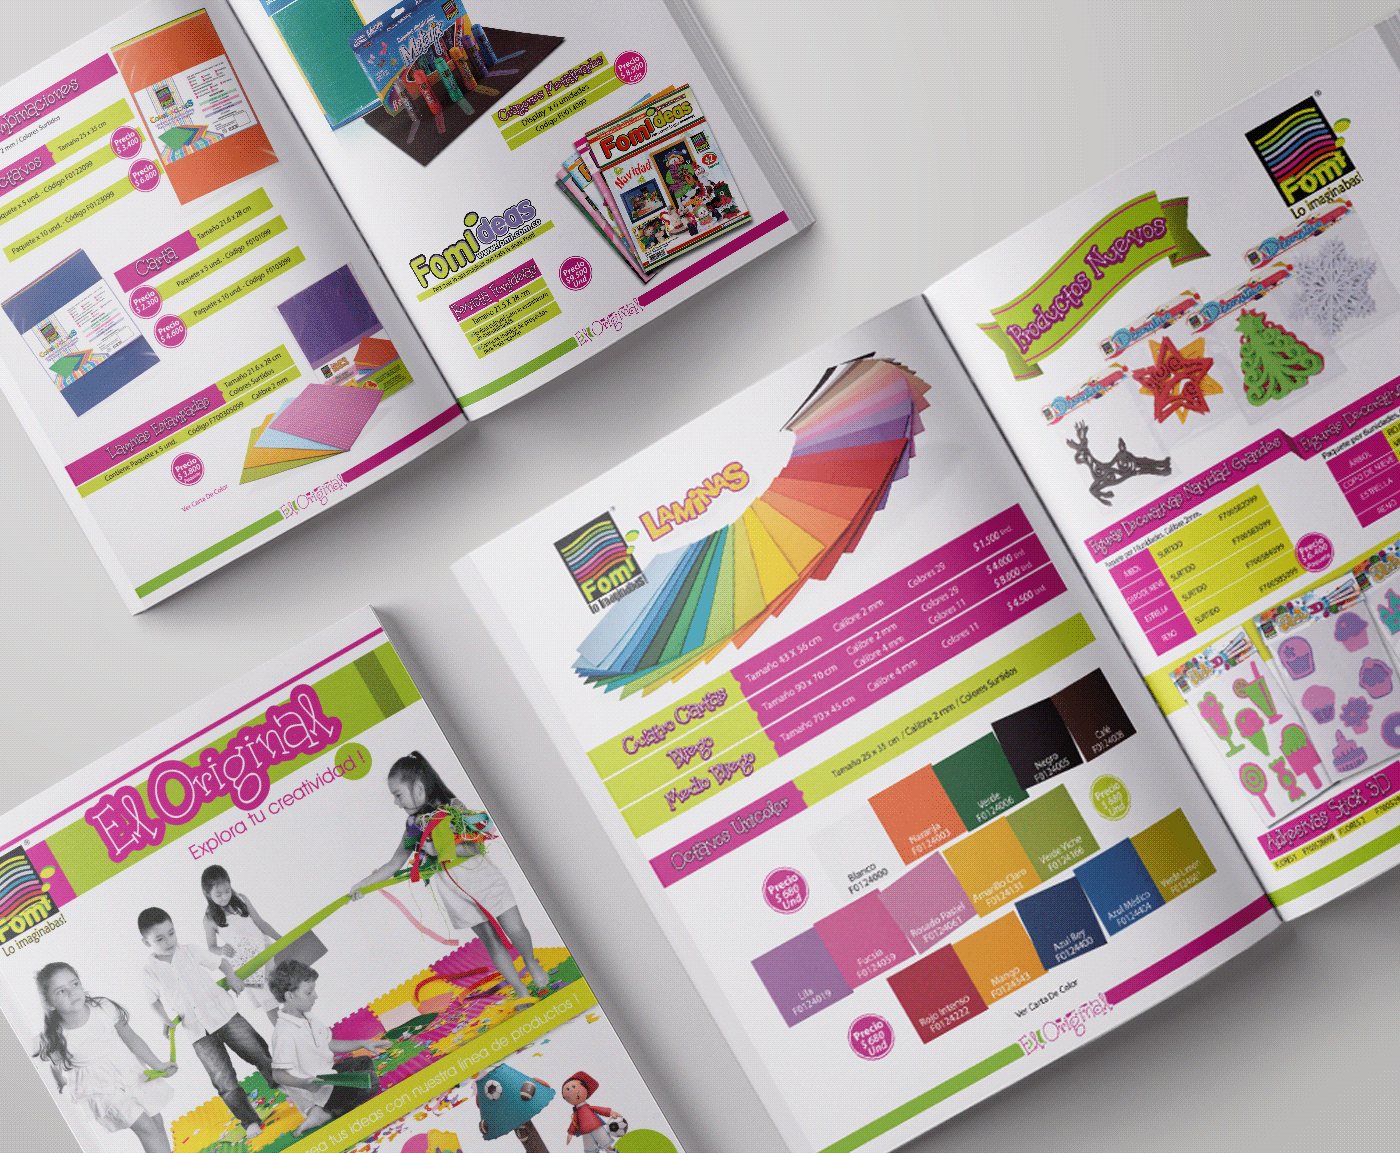 arte catalogo design direccion editorial design  magazine marca